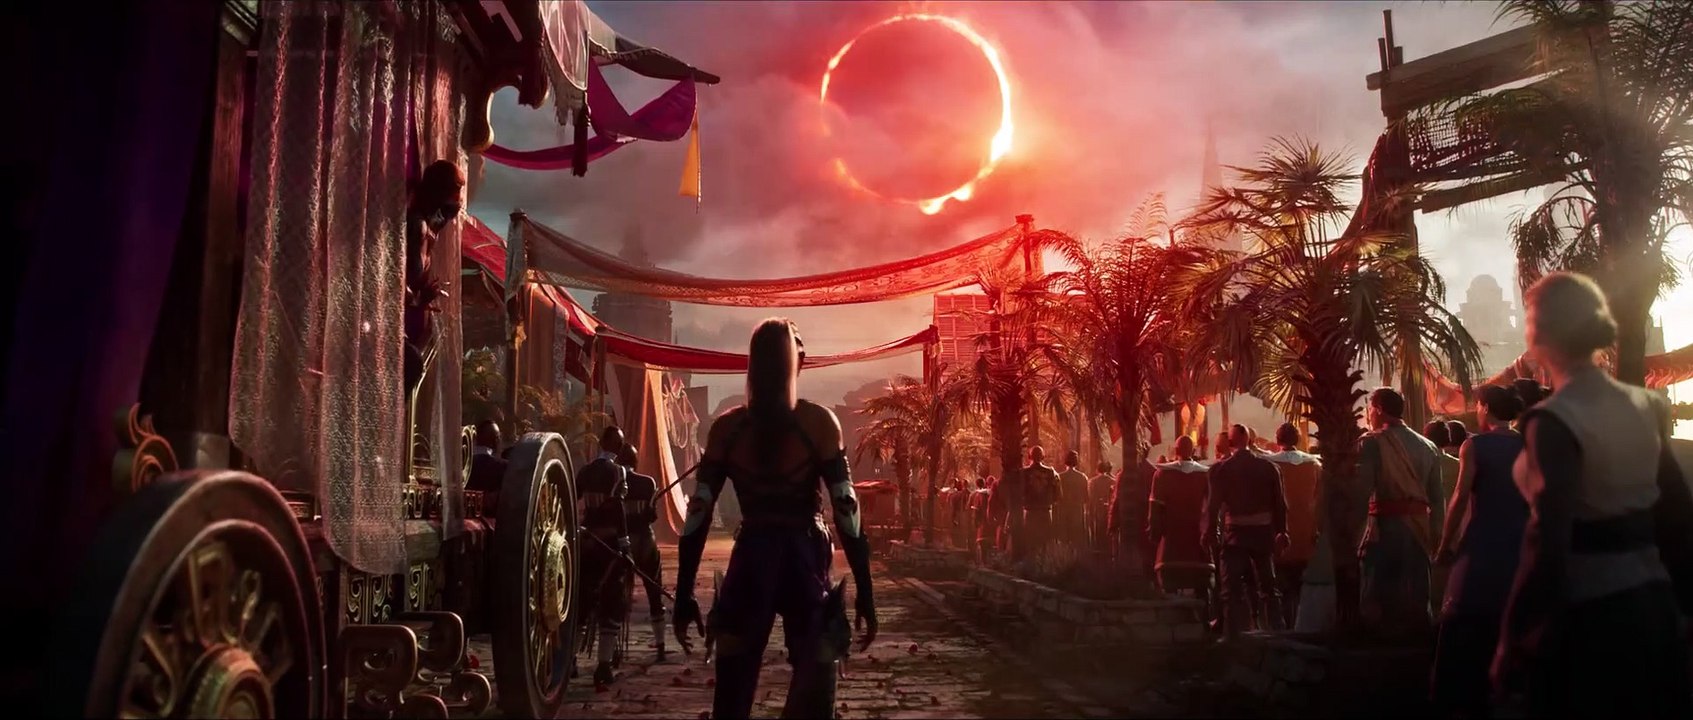 Mortal Kombat 1 bekommt nach 30 Jahren ein Reboot für PS5 und der Trailer zeigt genau das, was Fans der Reihe lieben